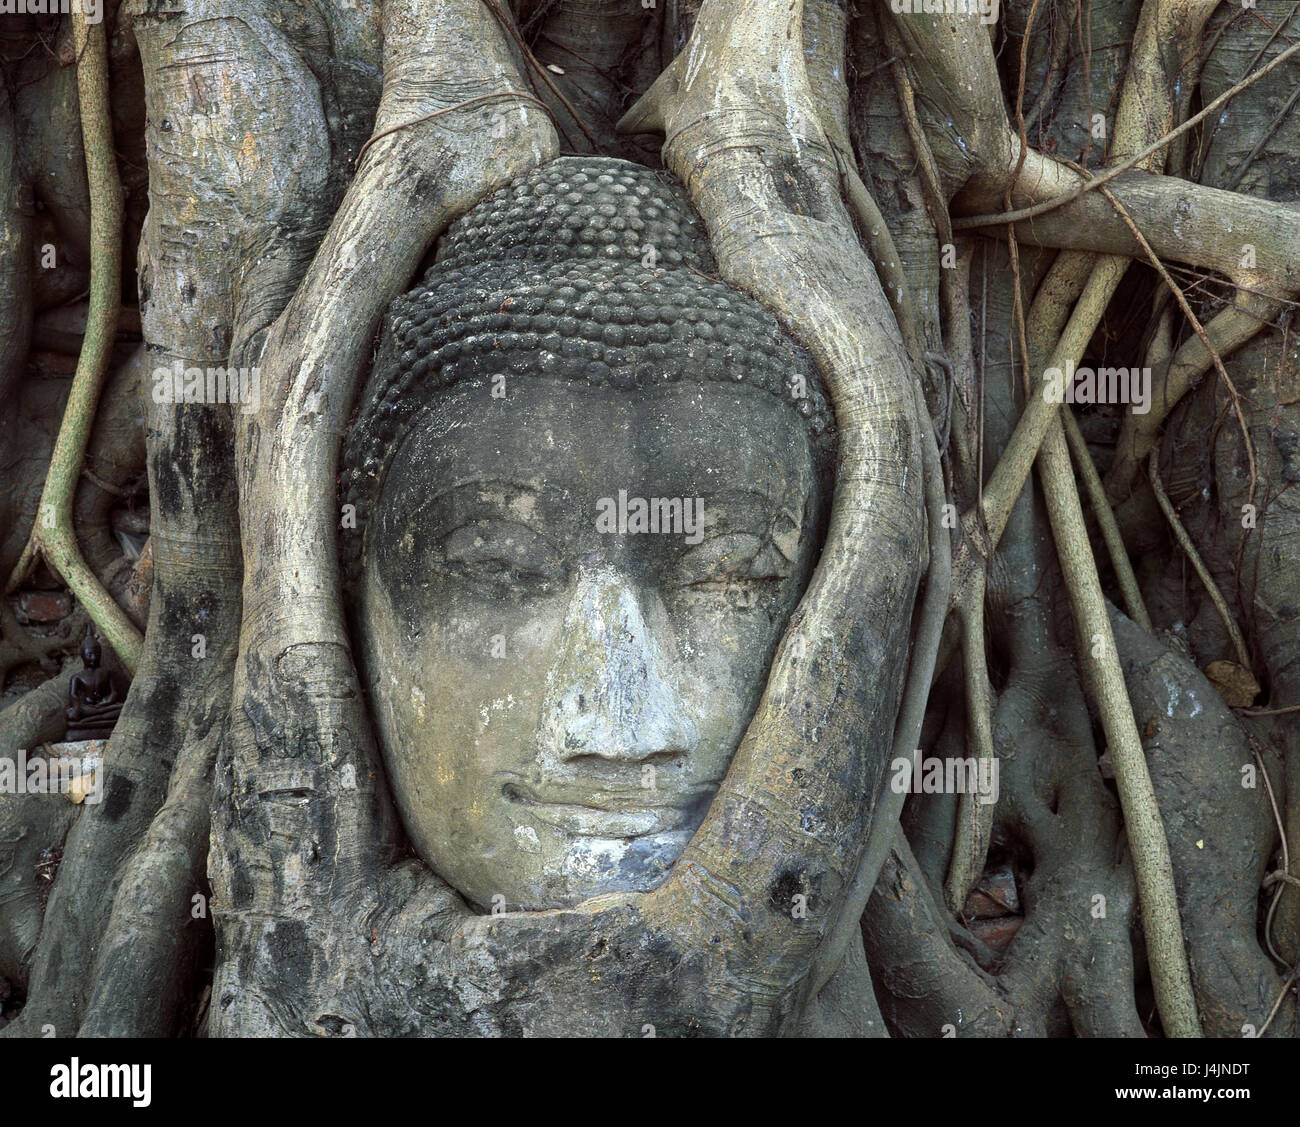 La Thaïlande, Ayutthaya, Wat Mahathat, statue, Bouddha, portrait, trunk Krung Kao, UNESCO-Patrimoine culturel, cultivé autour, poils incarnés Banque D'Images